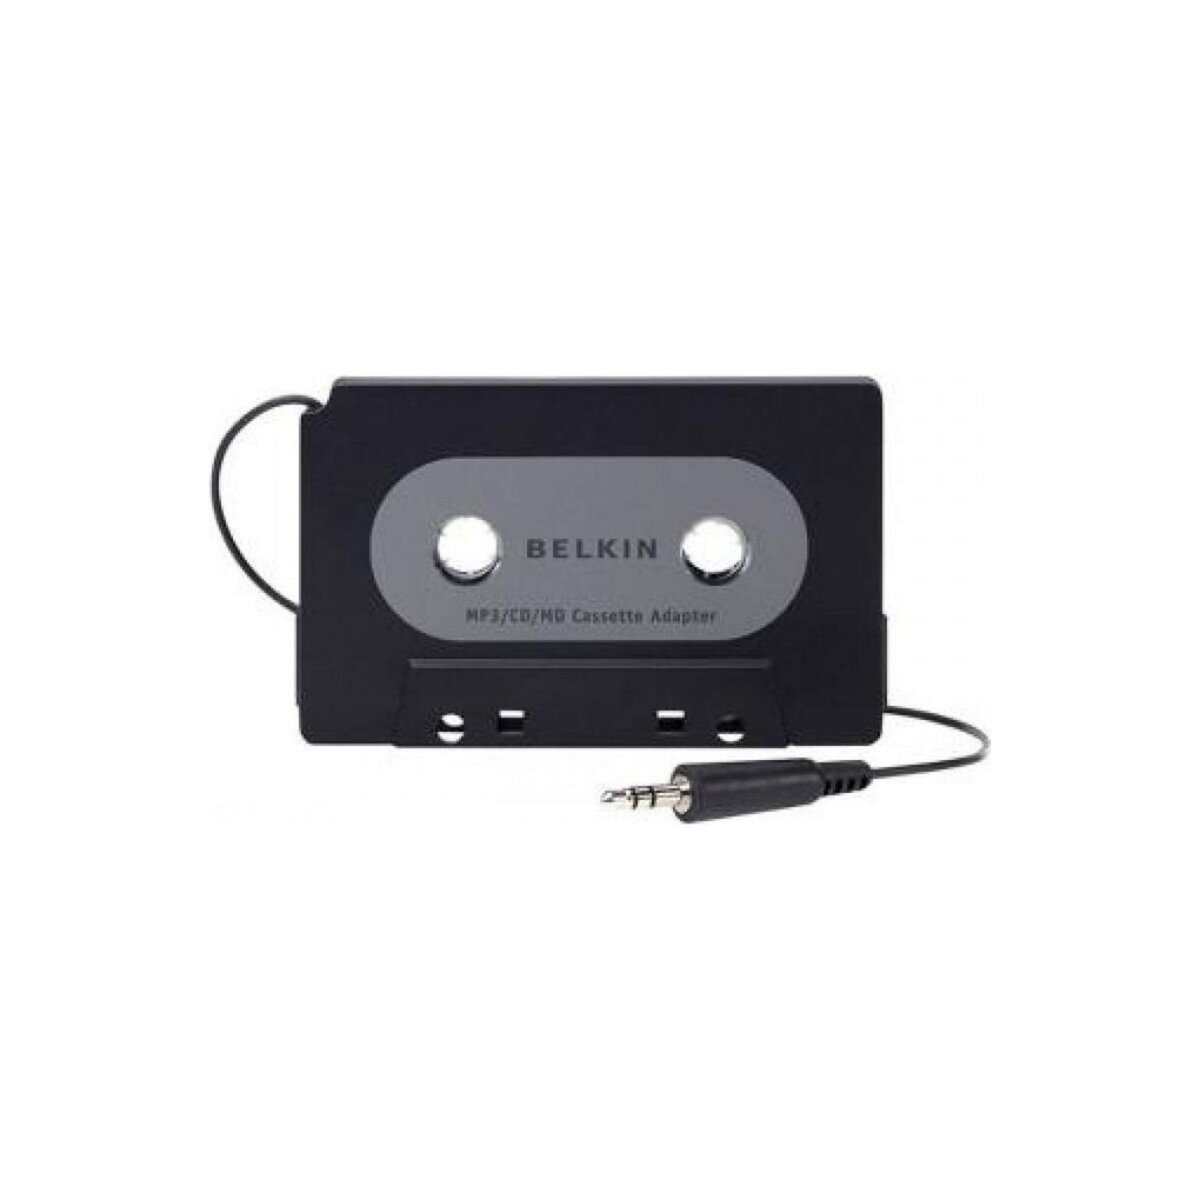 Belkin Adaptateur Cassette/Jack Cassette avec sortie jack 3.5mm